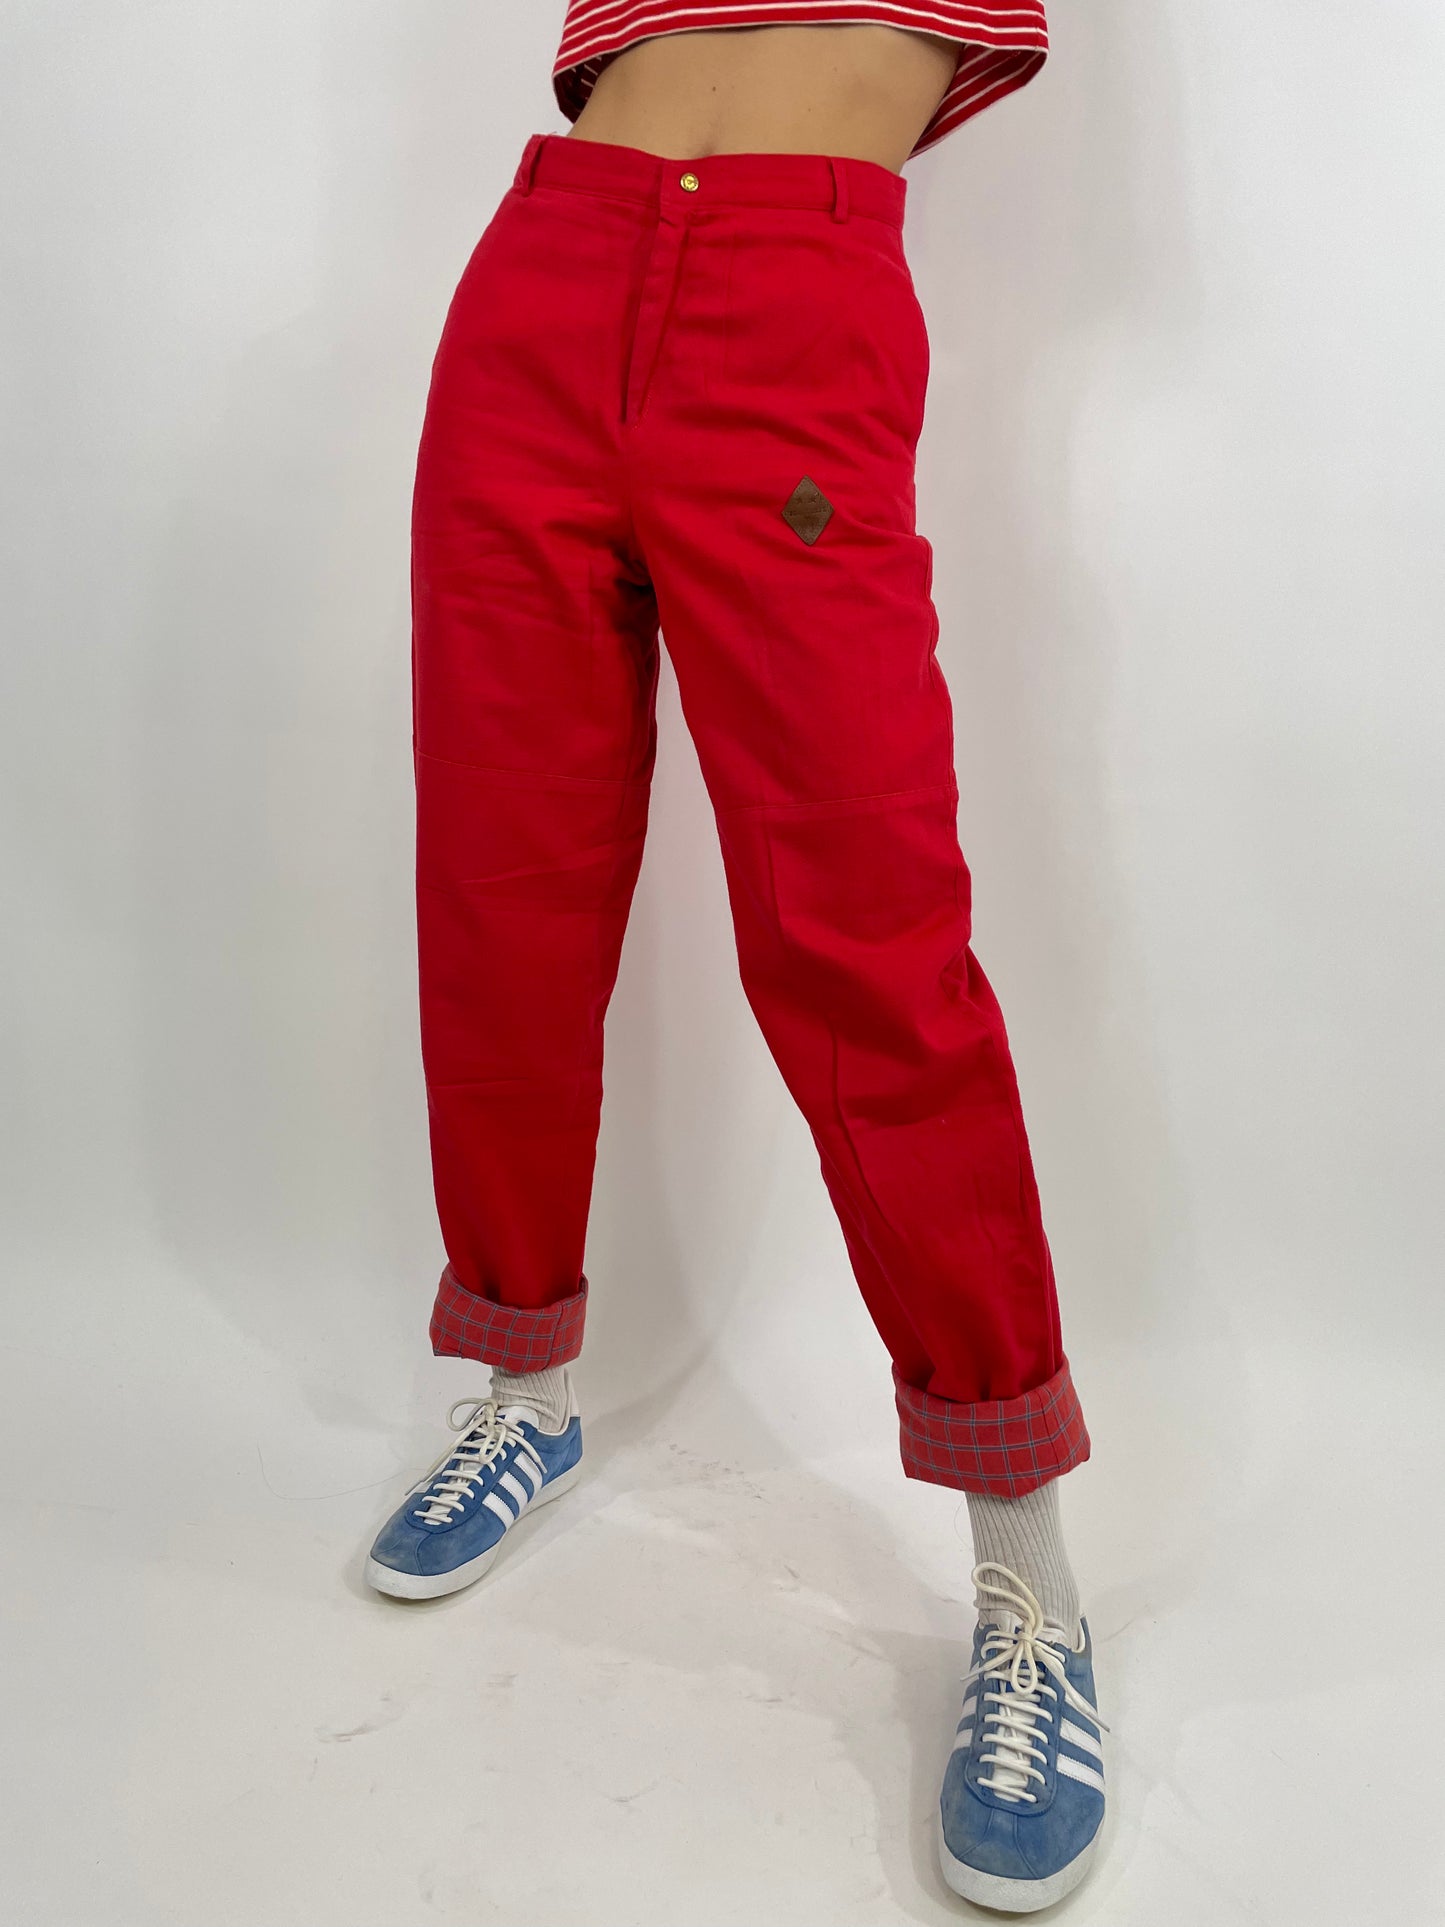 Portobello's 1990s trousers